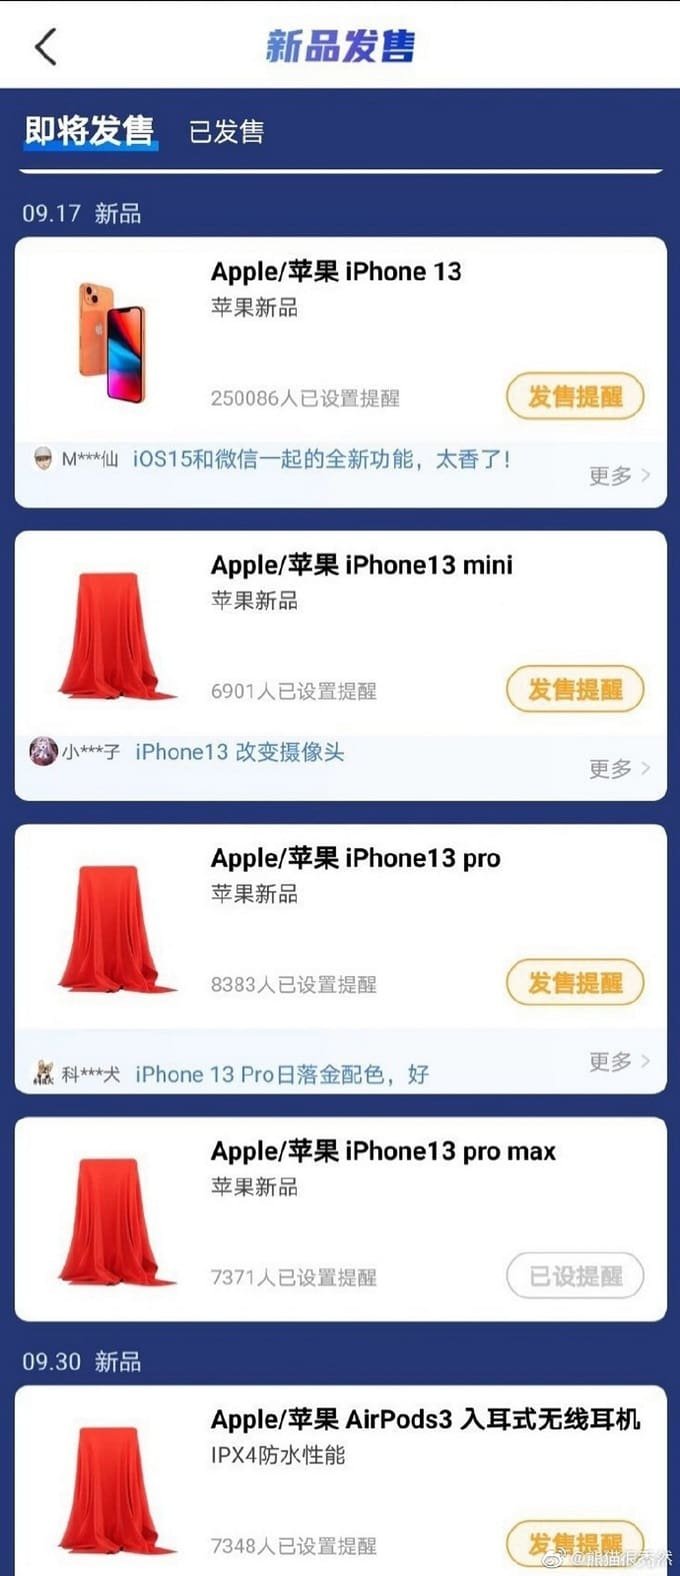 Apple có thể mở bán iPhone 13 vào ngày 17/9